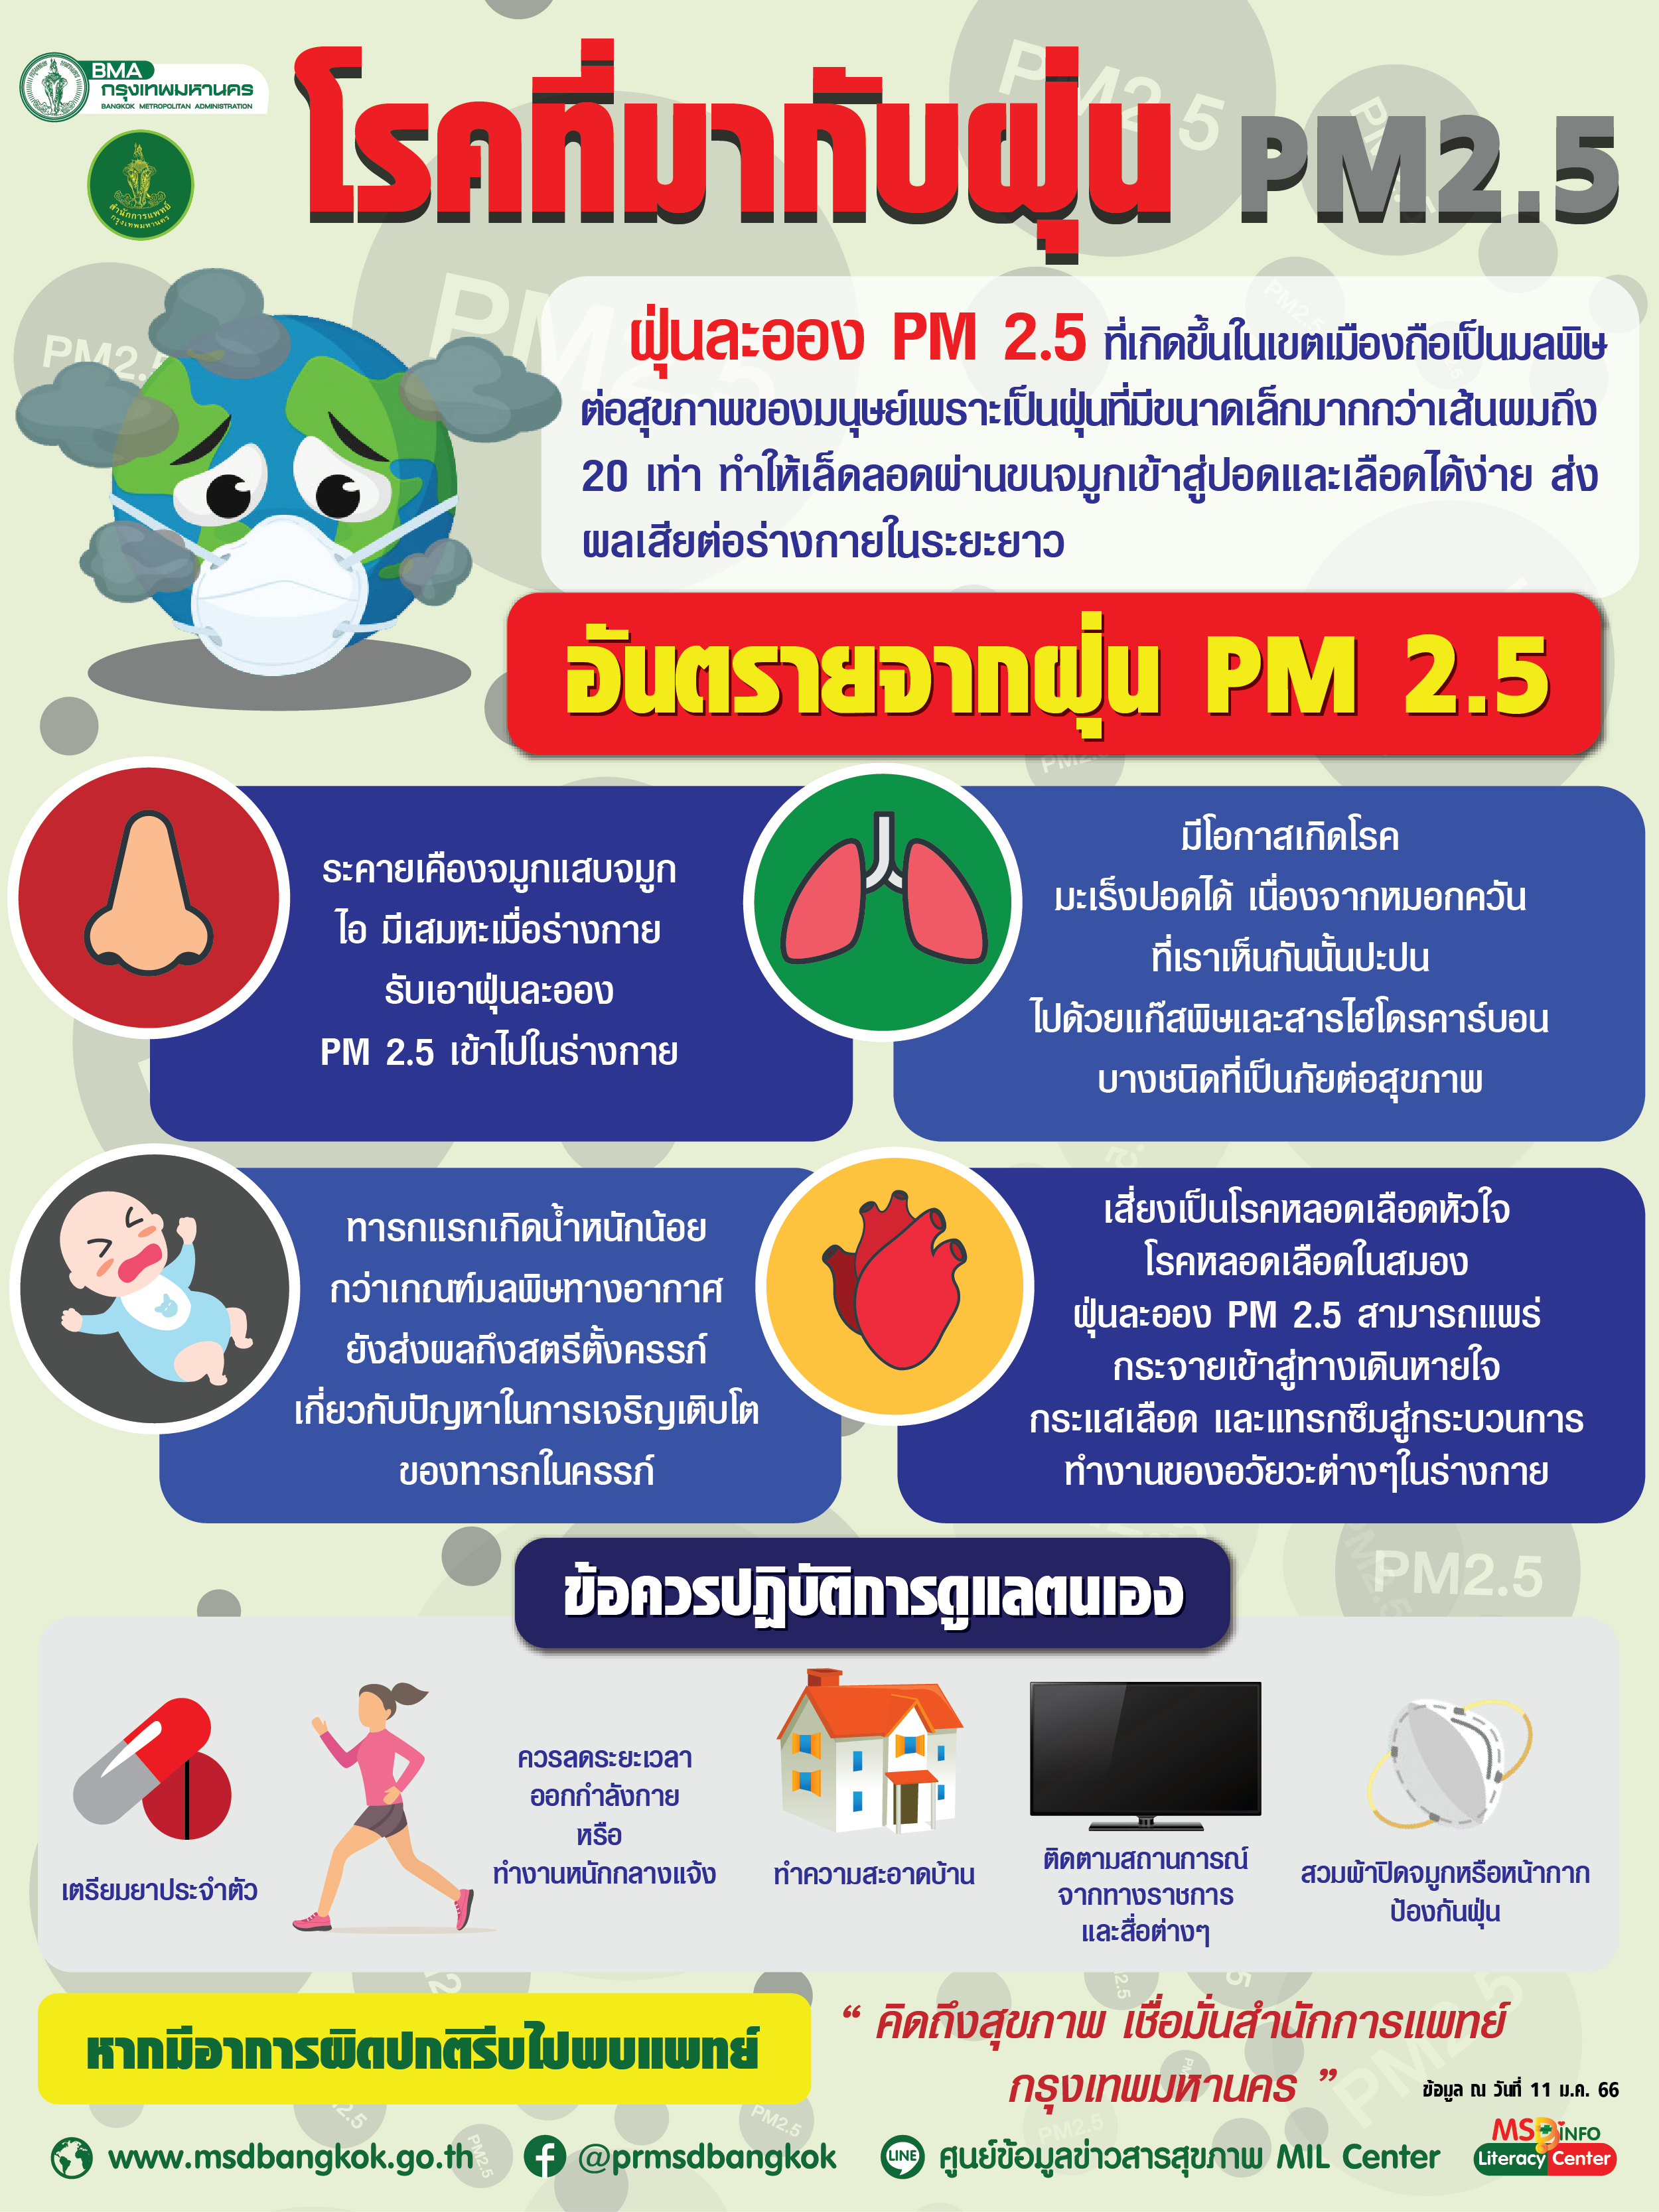 กทม.เตรียมพร้อมด้านการแพทย์และสาธารณสุขดูแลสุขภาพประชาชนที่ได้รับผลกระทบจากฝุ่น PM2.5